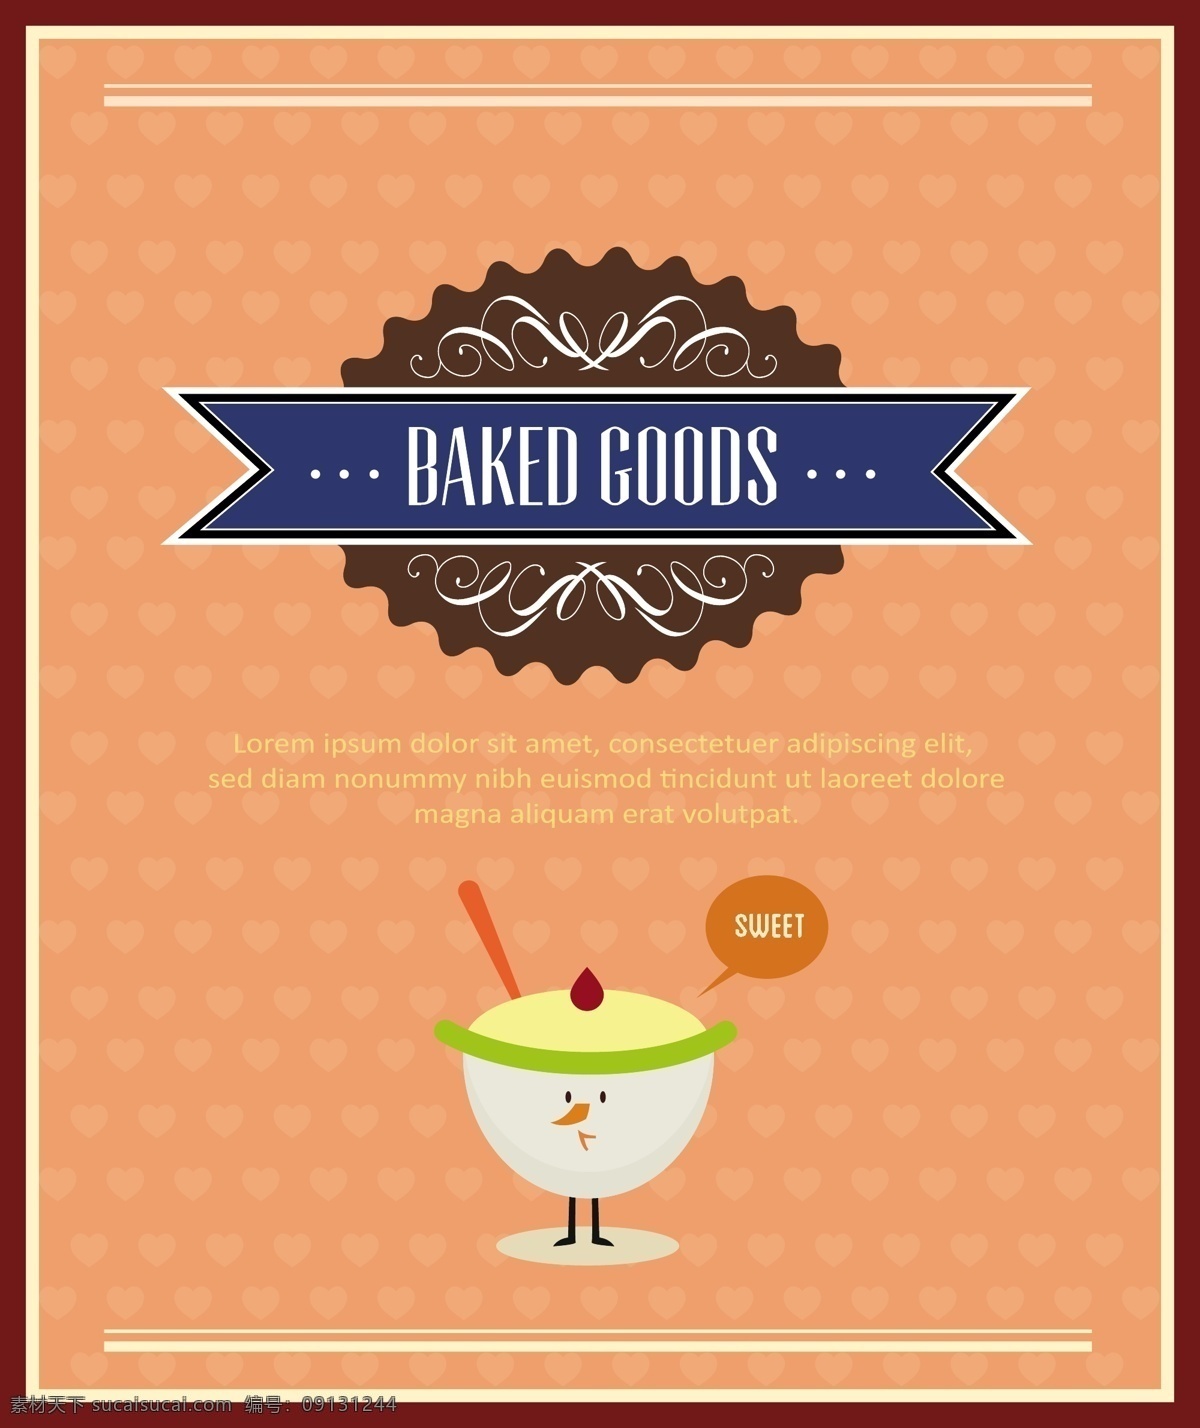 冰淇淋插画 食品插画 美食漫画 美食海报 食品海报 其他模板 矢量素材 橙色